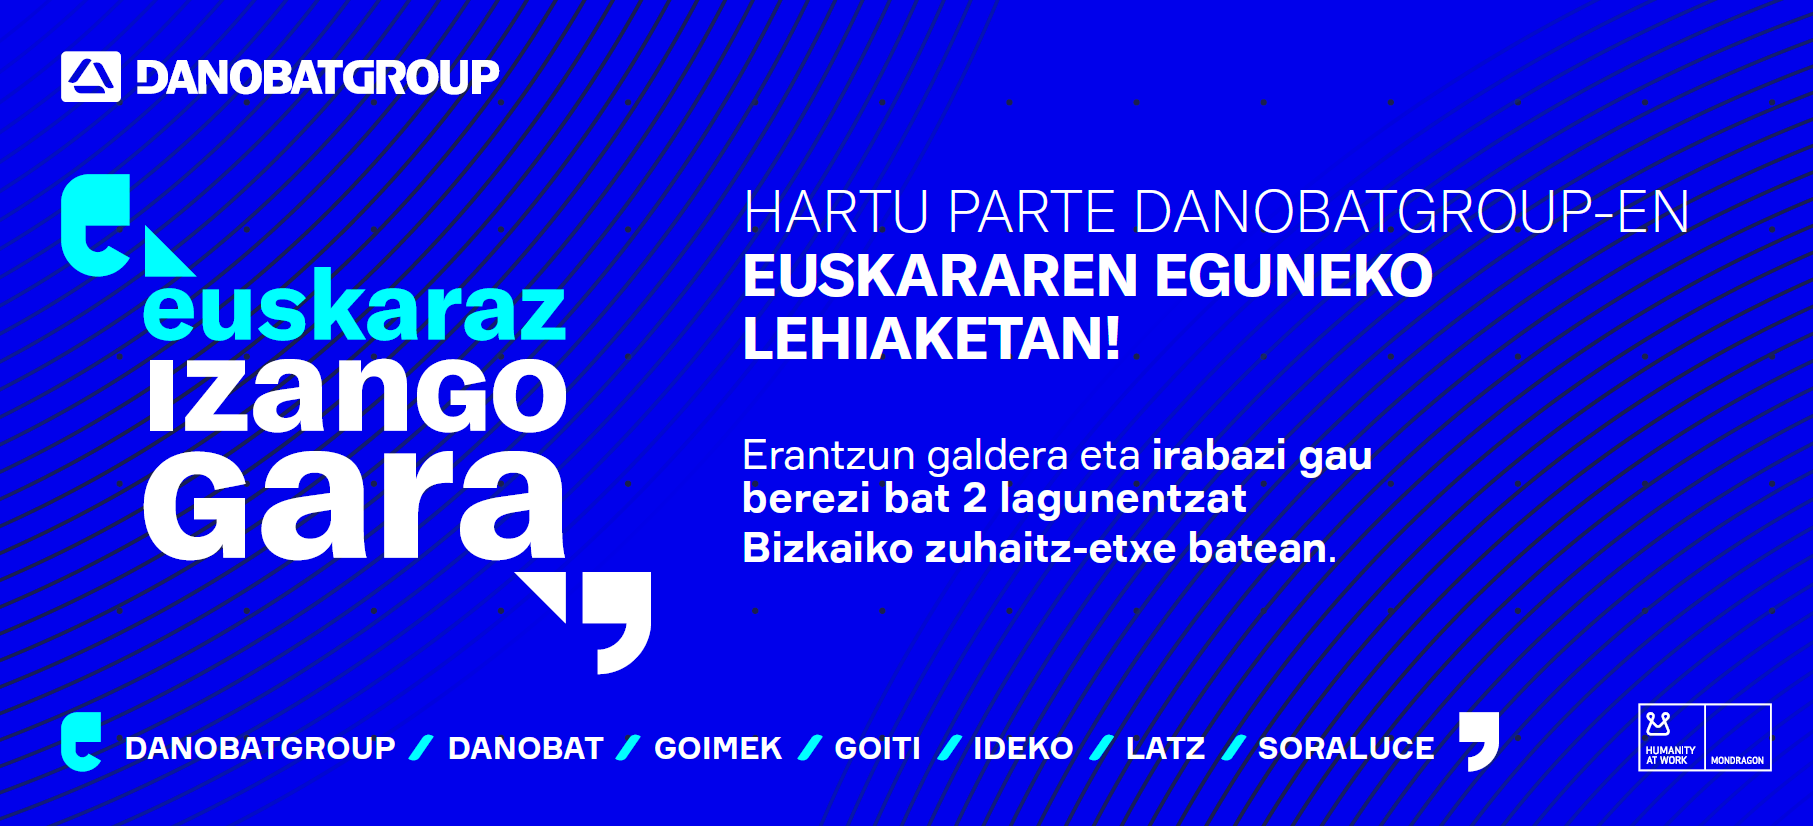 El concurso publicado por Danobatgroup bajo el lema "euskaraz izango gara" ya tiene ganador